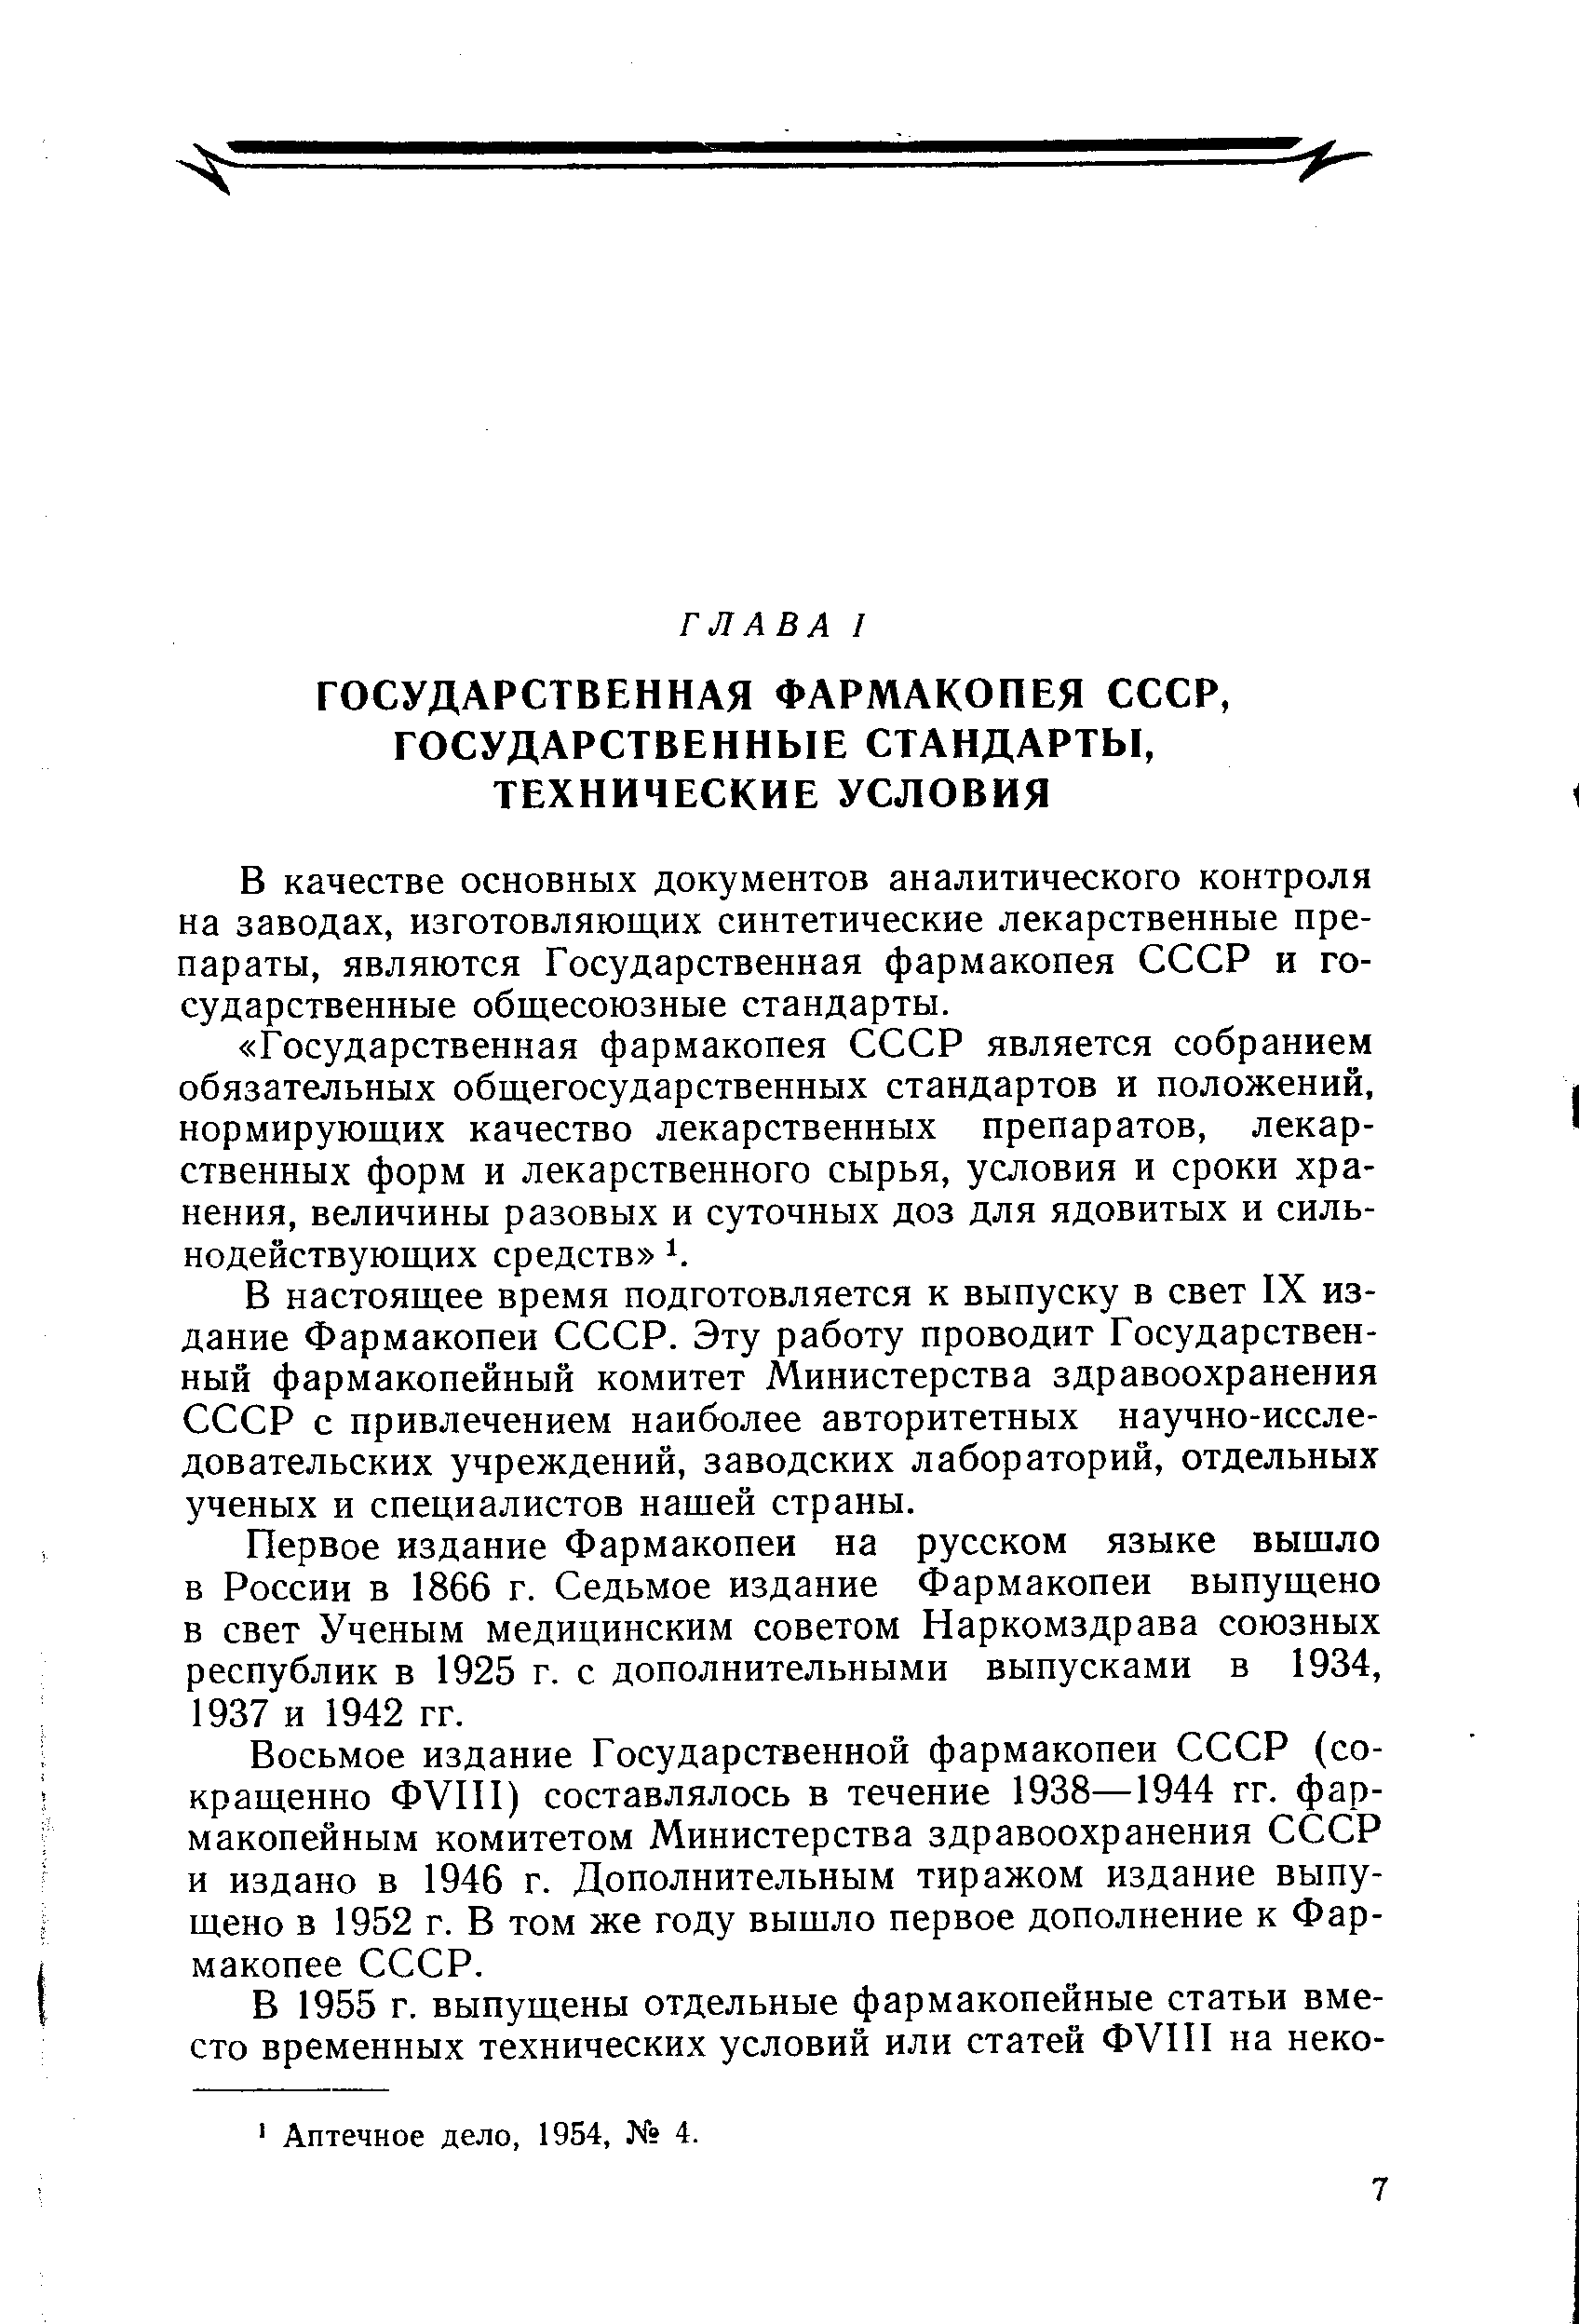 В качестве основных документов аналитического контроля на заводах, изготовляющих синтетические лекарственные препараты, являются Государственная фармакопея СССР и государственные общесоюзные стандарты.